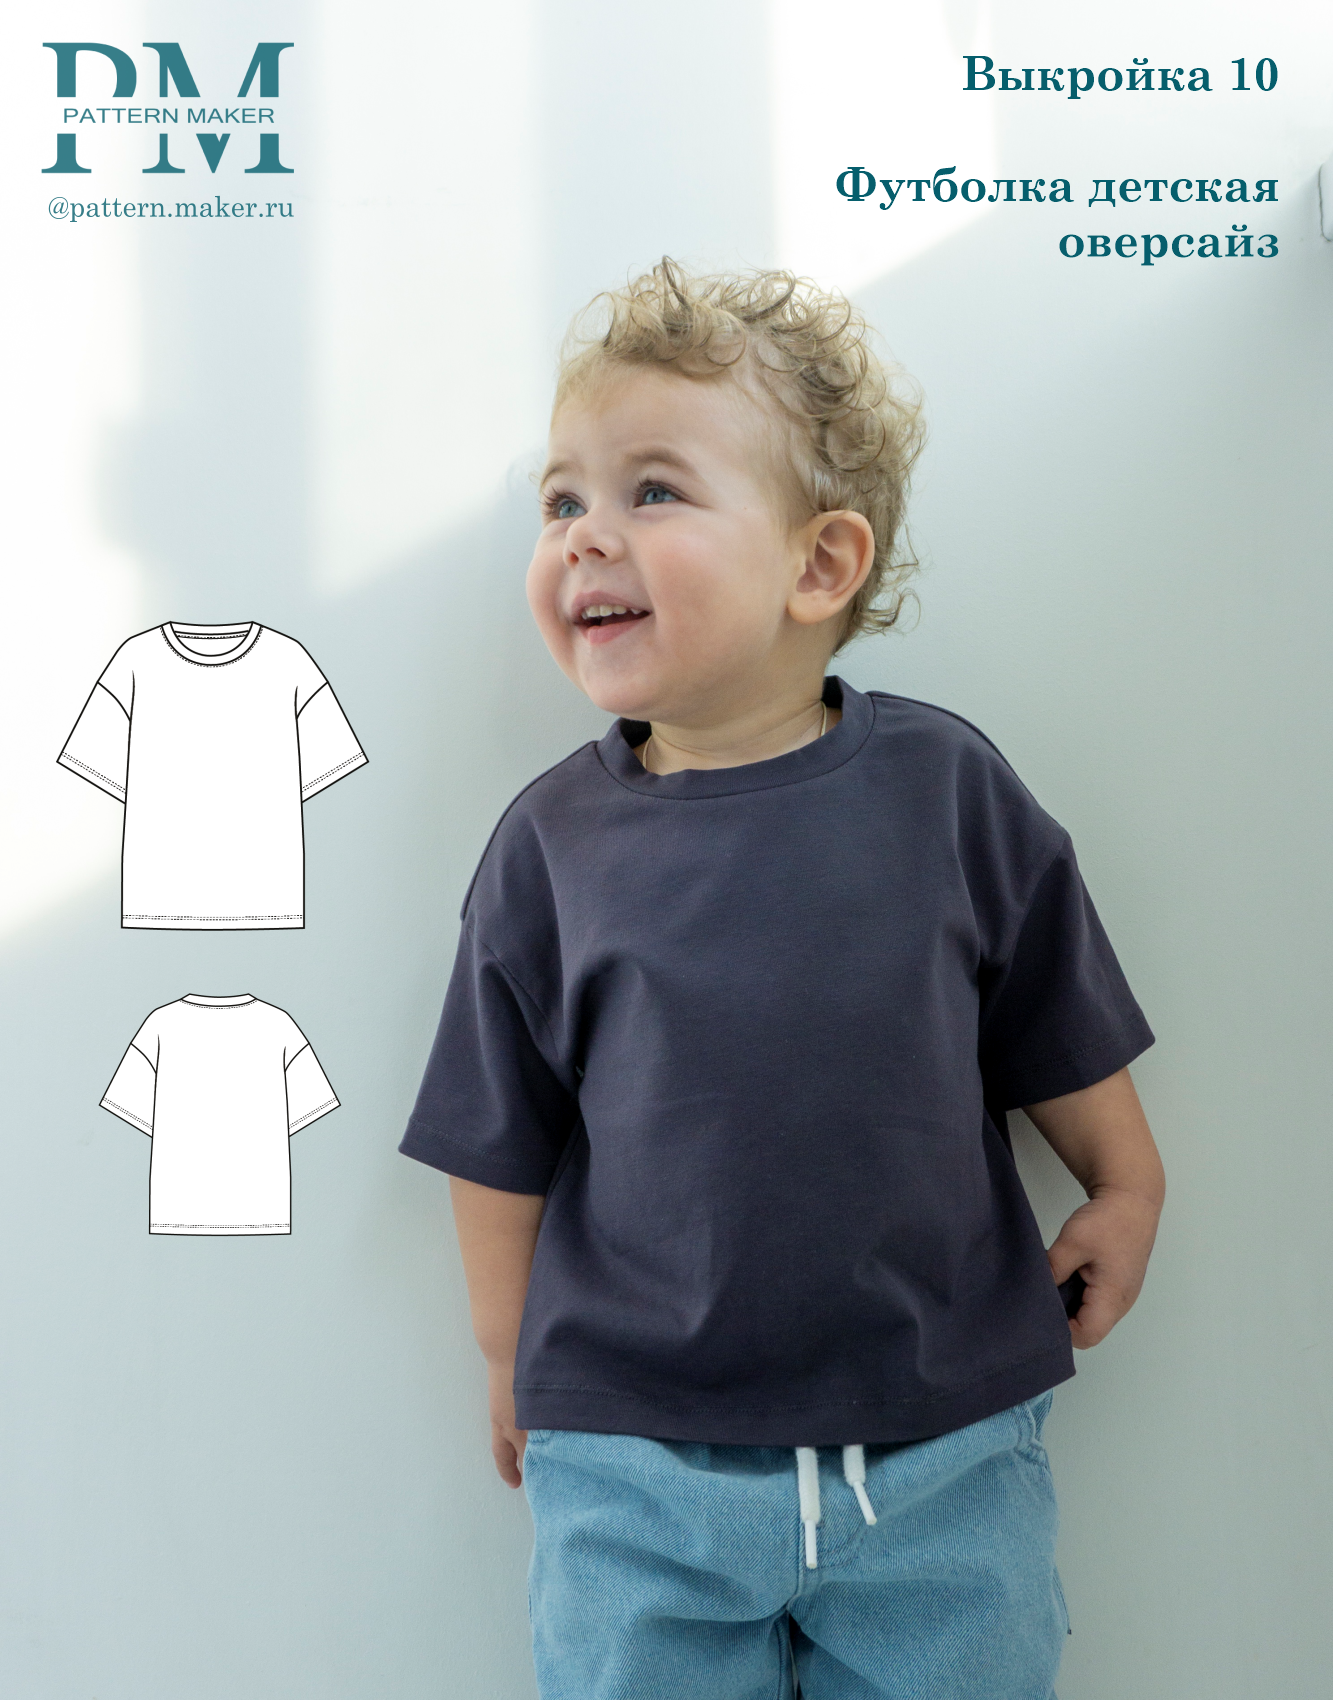 Выкройка детской футболки оверсайз "10", автор Pattern.Maker